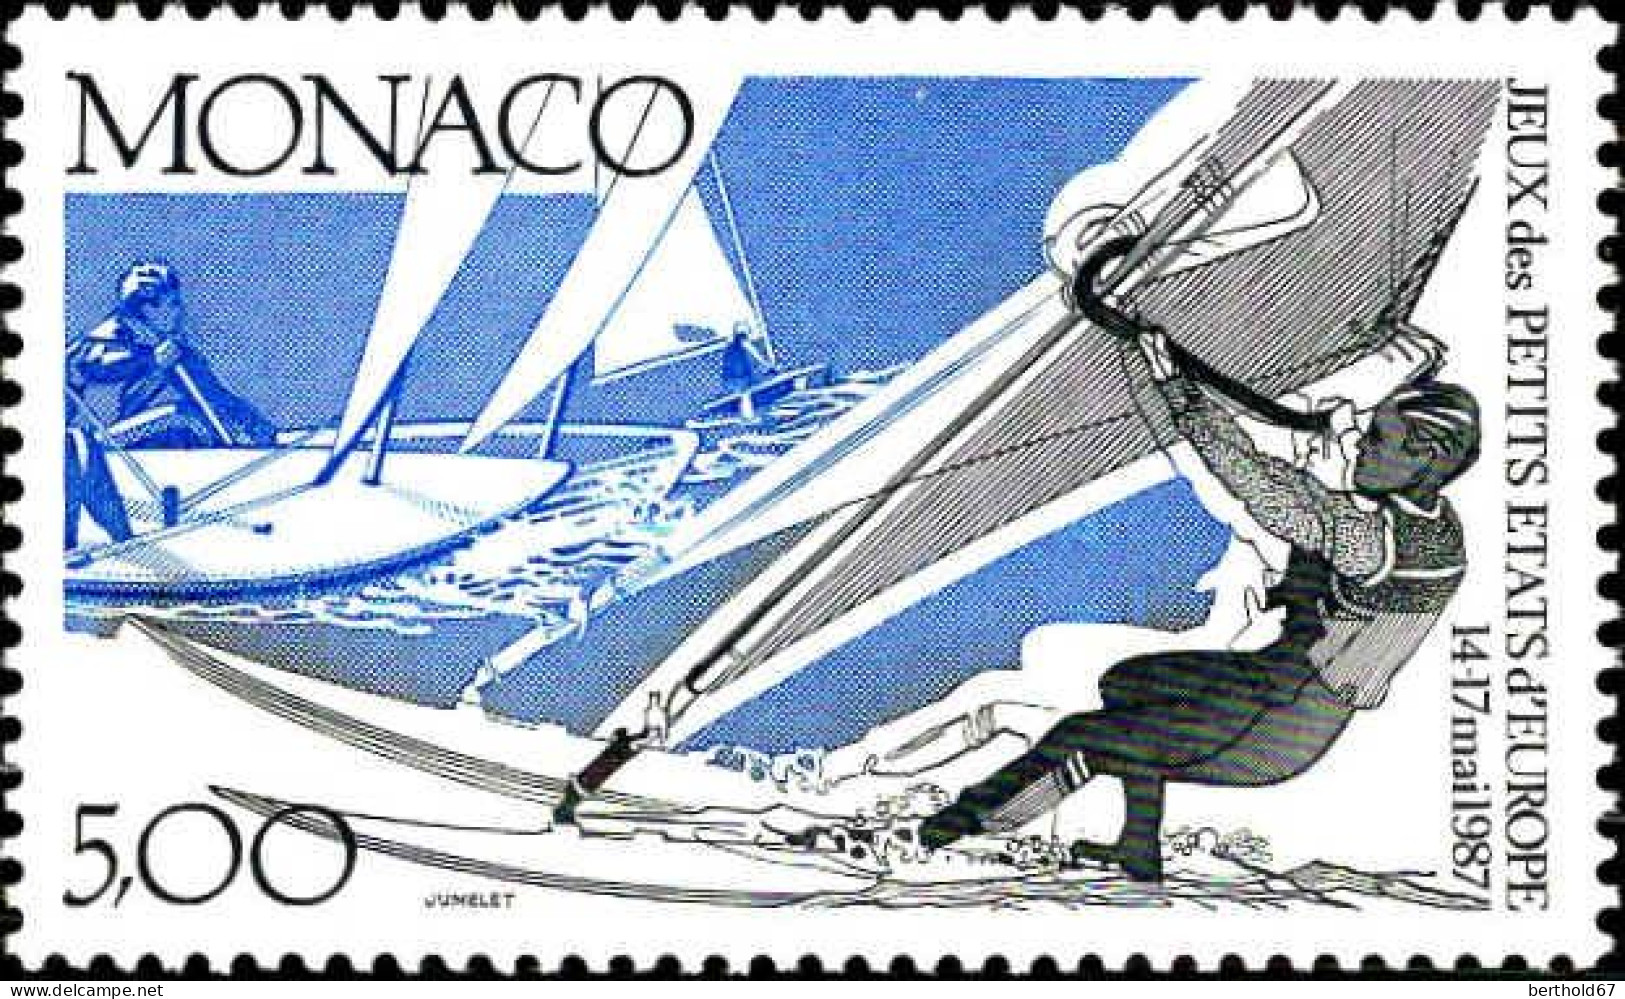 Monaco Poste N** Yv:1580 Mi:1809 Jeux Des Petits Etats D'Europe Voile (Thème) - Sailing